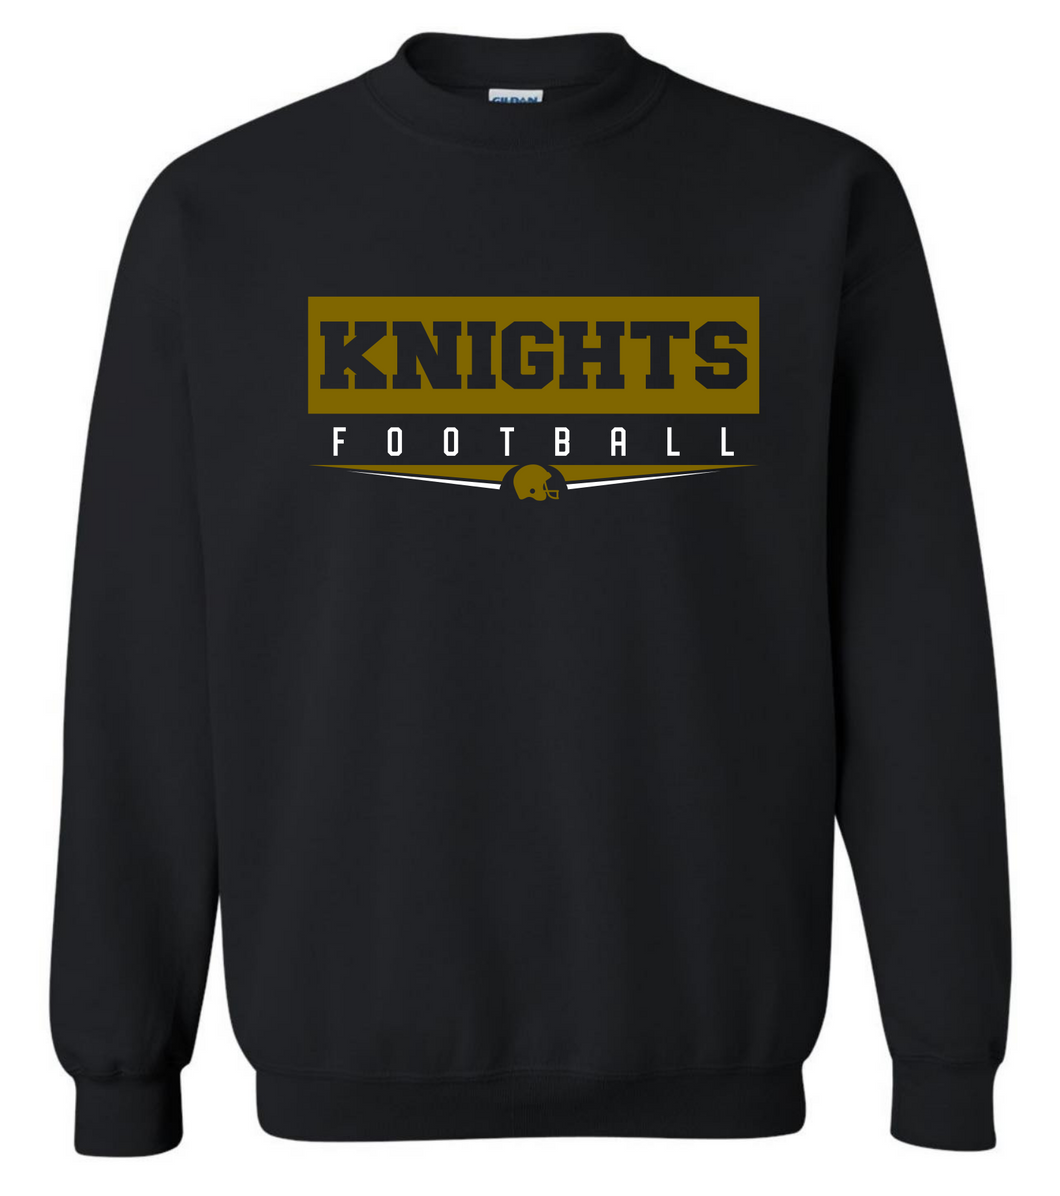 Knights Football Sweatshirt Gold